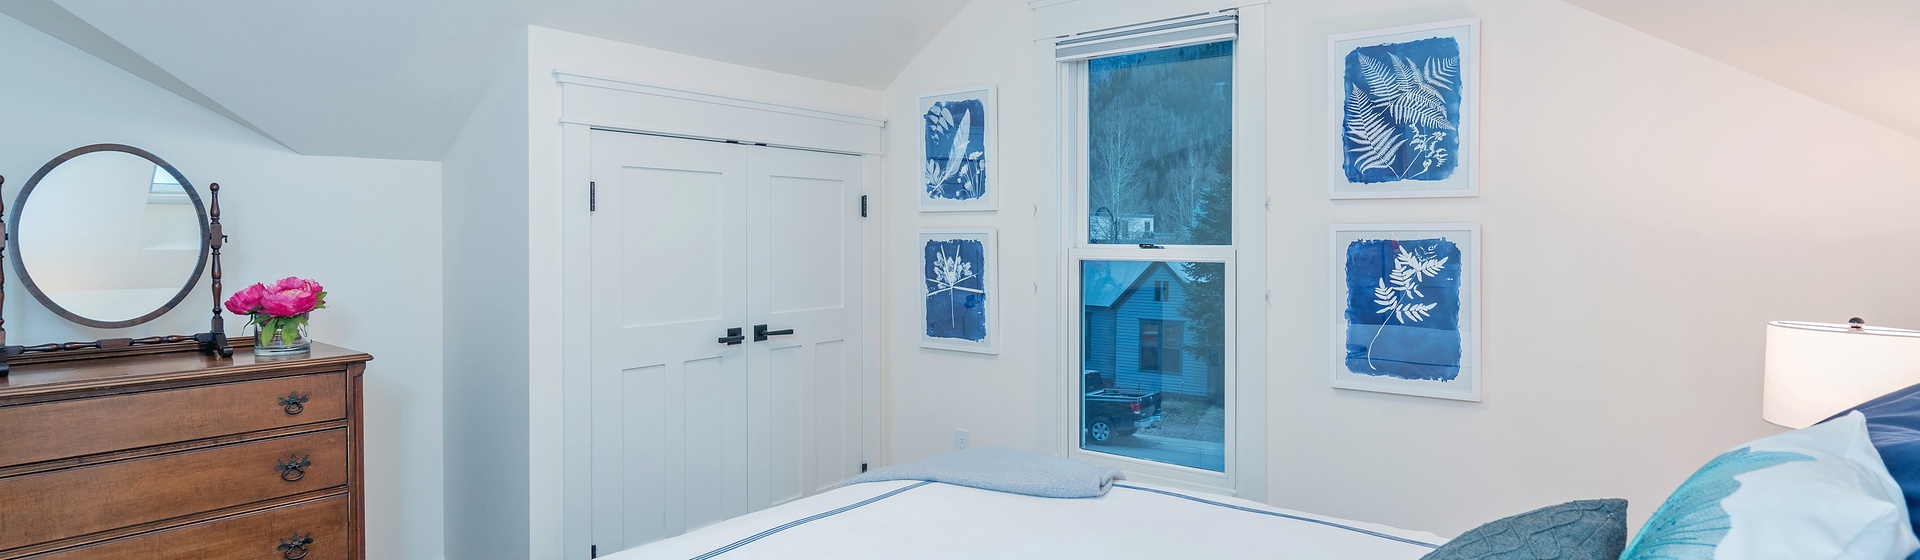 23-Telluride-The-Bridal-Veil-Guest-Bedroom.JPG